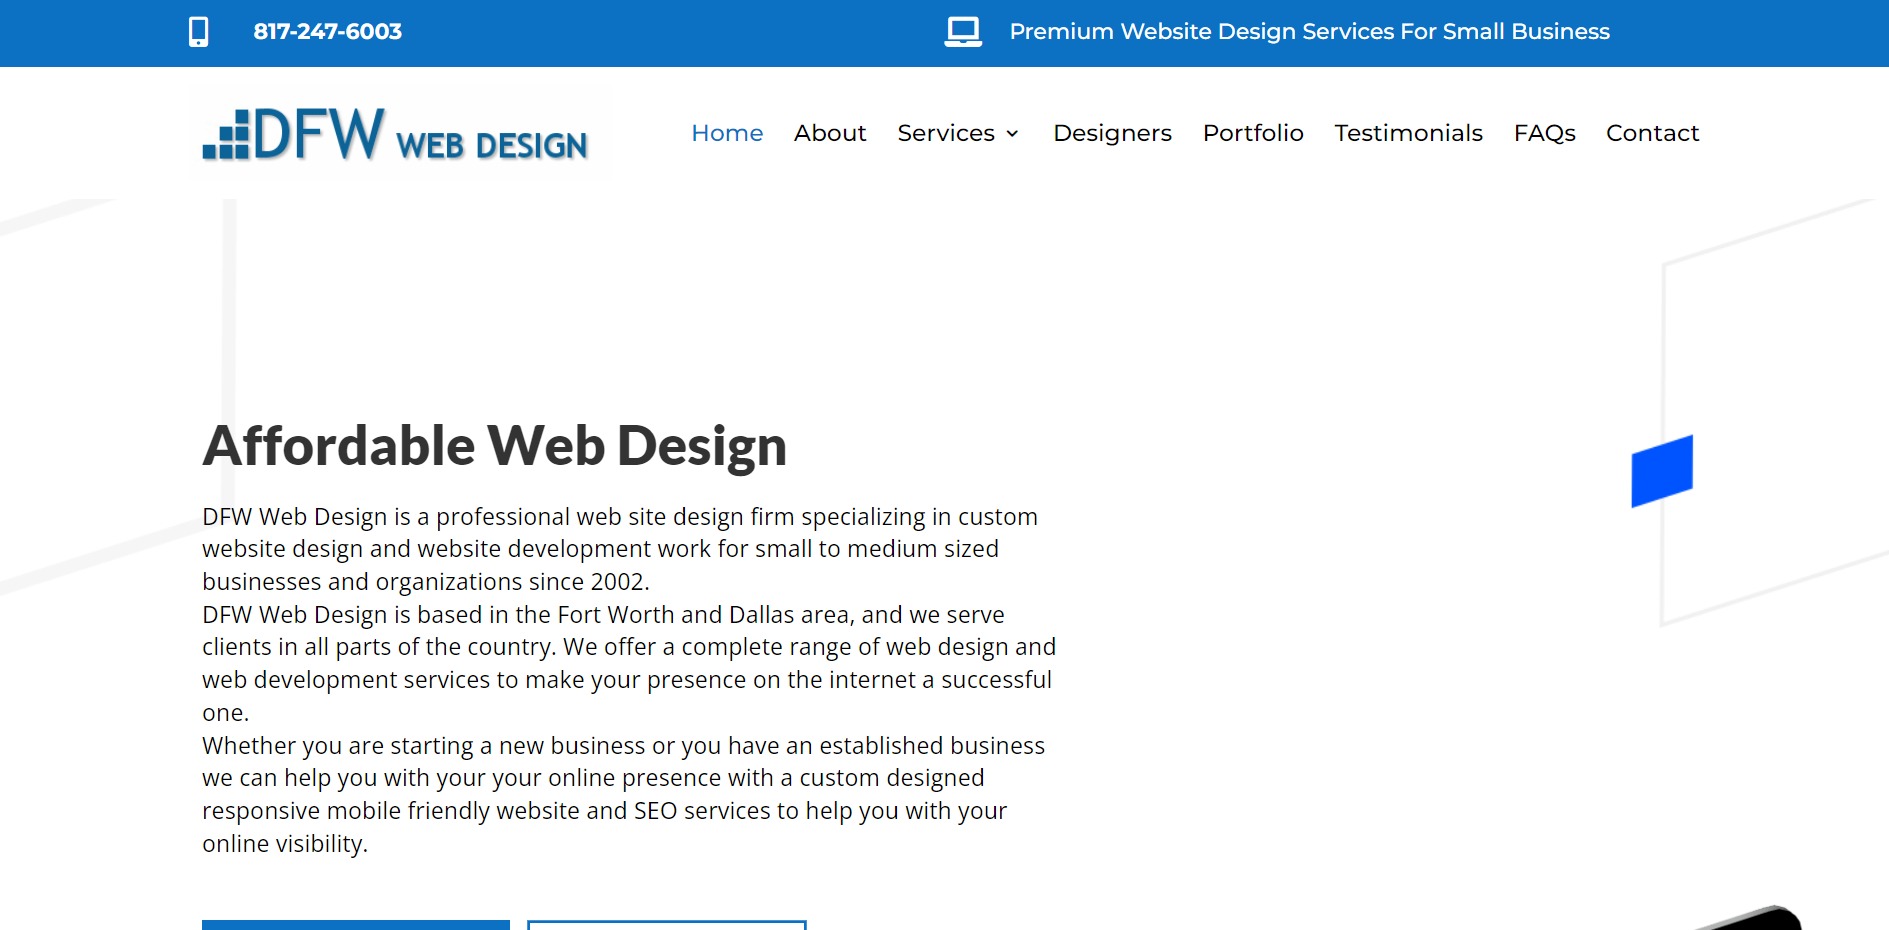 DFW Web Design